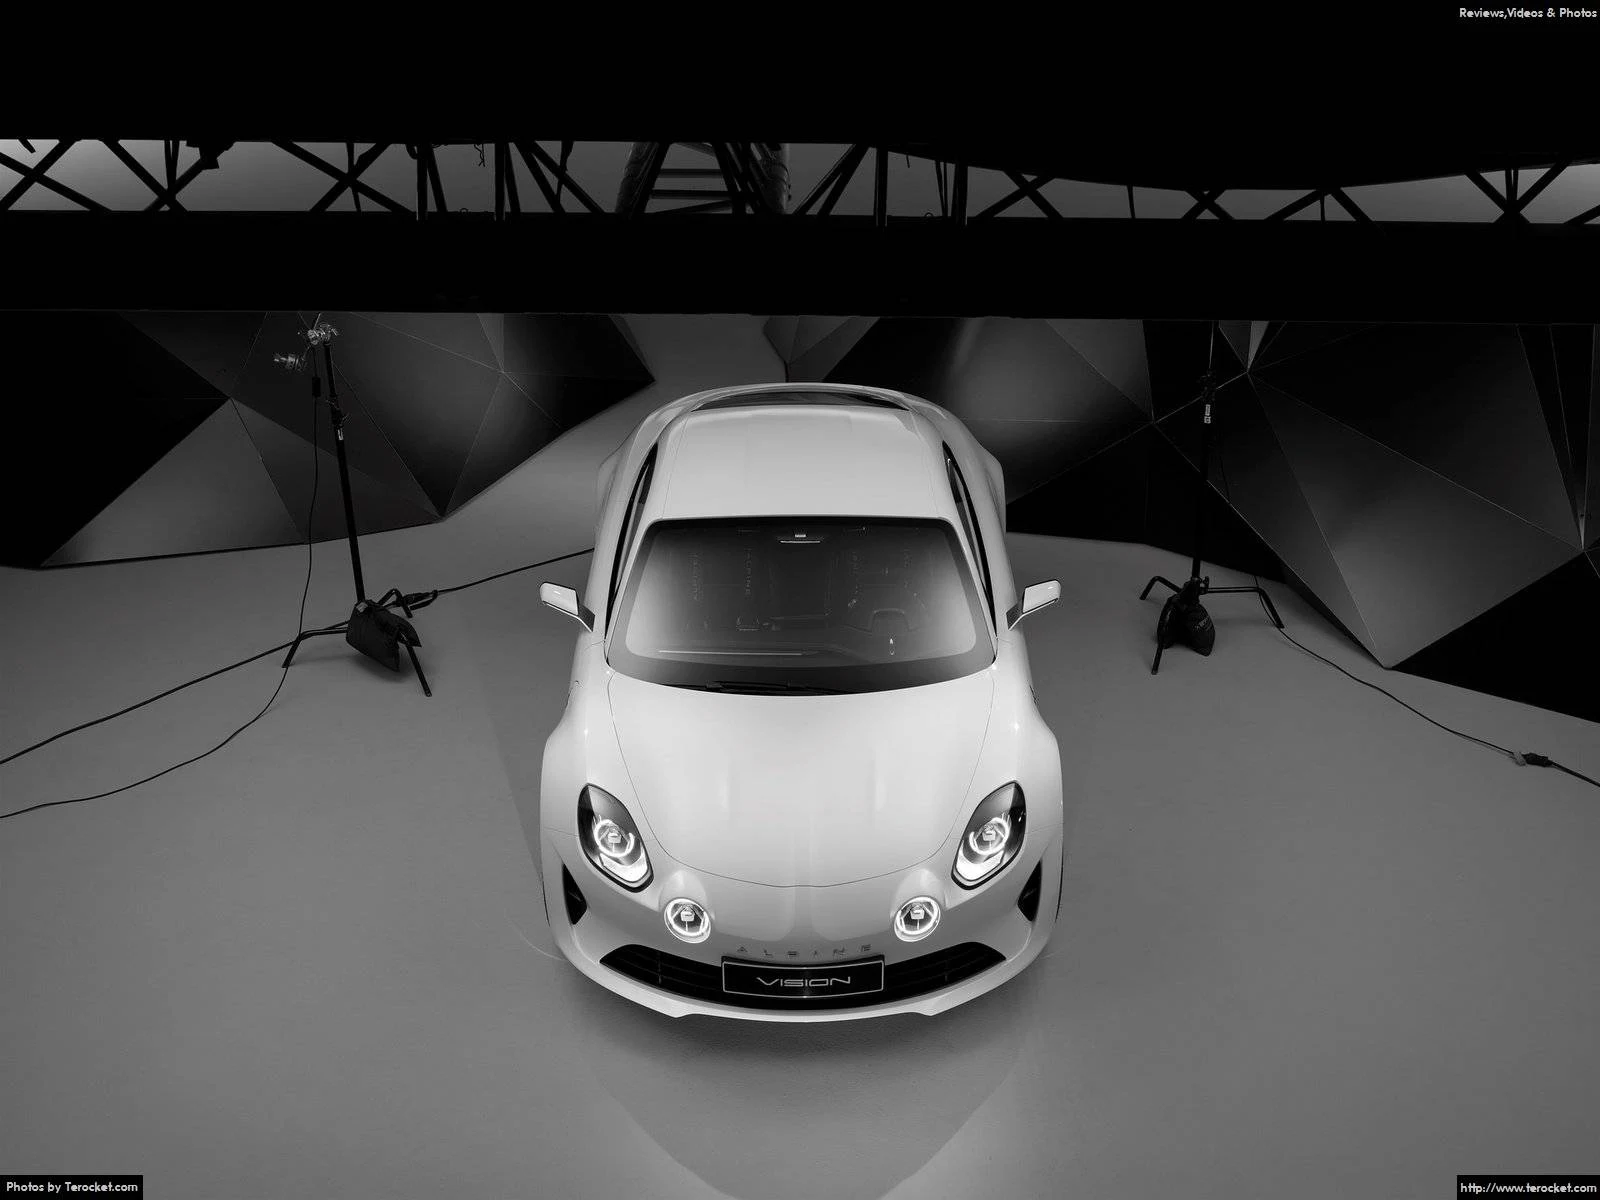 Hình ảnh xe ô tô Alpine Vision Concept 2016 & nội ngoại thất